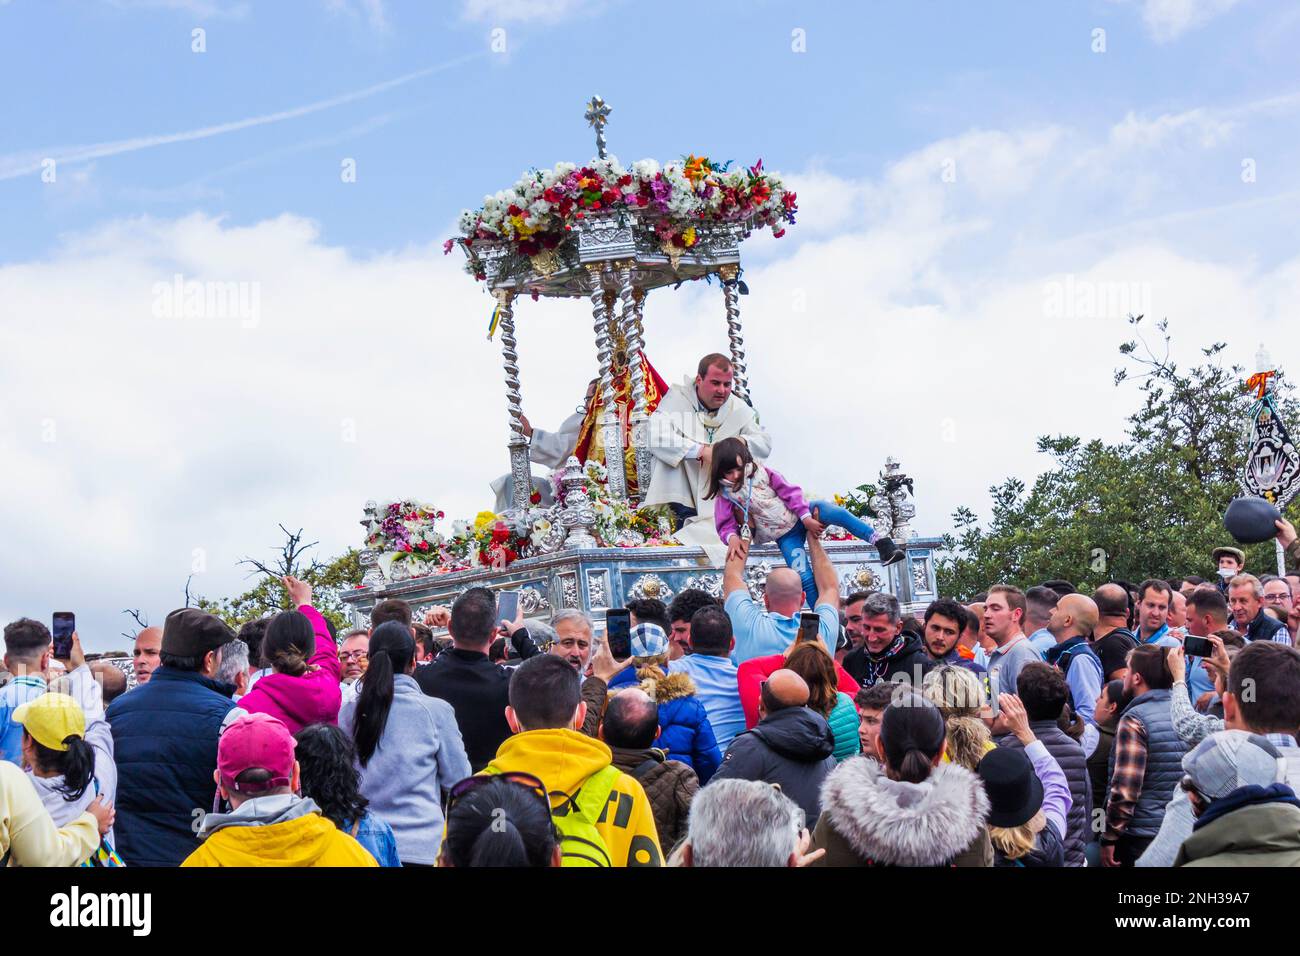 Andujar, province de Jaen, Espagne. Romeria annuelle de la Virgen de la Cabeza. Trône avec la statue de la Virgen et deux prêtres transportés parmi le multit Banque D'Images